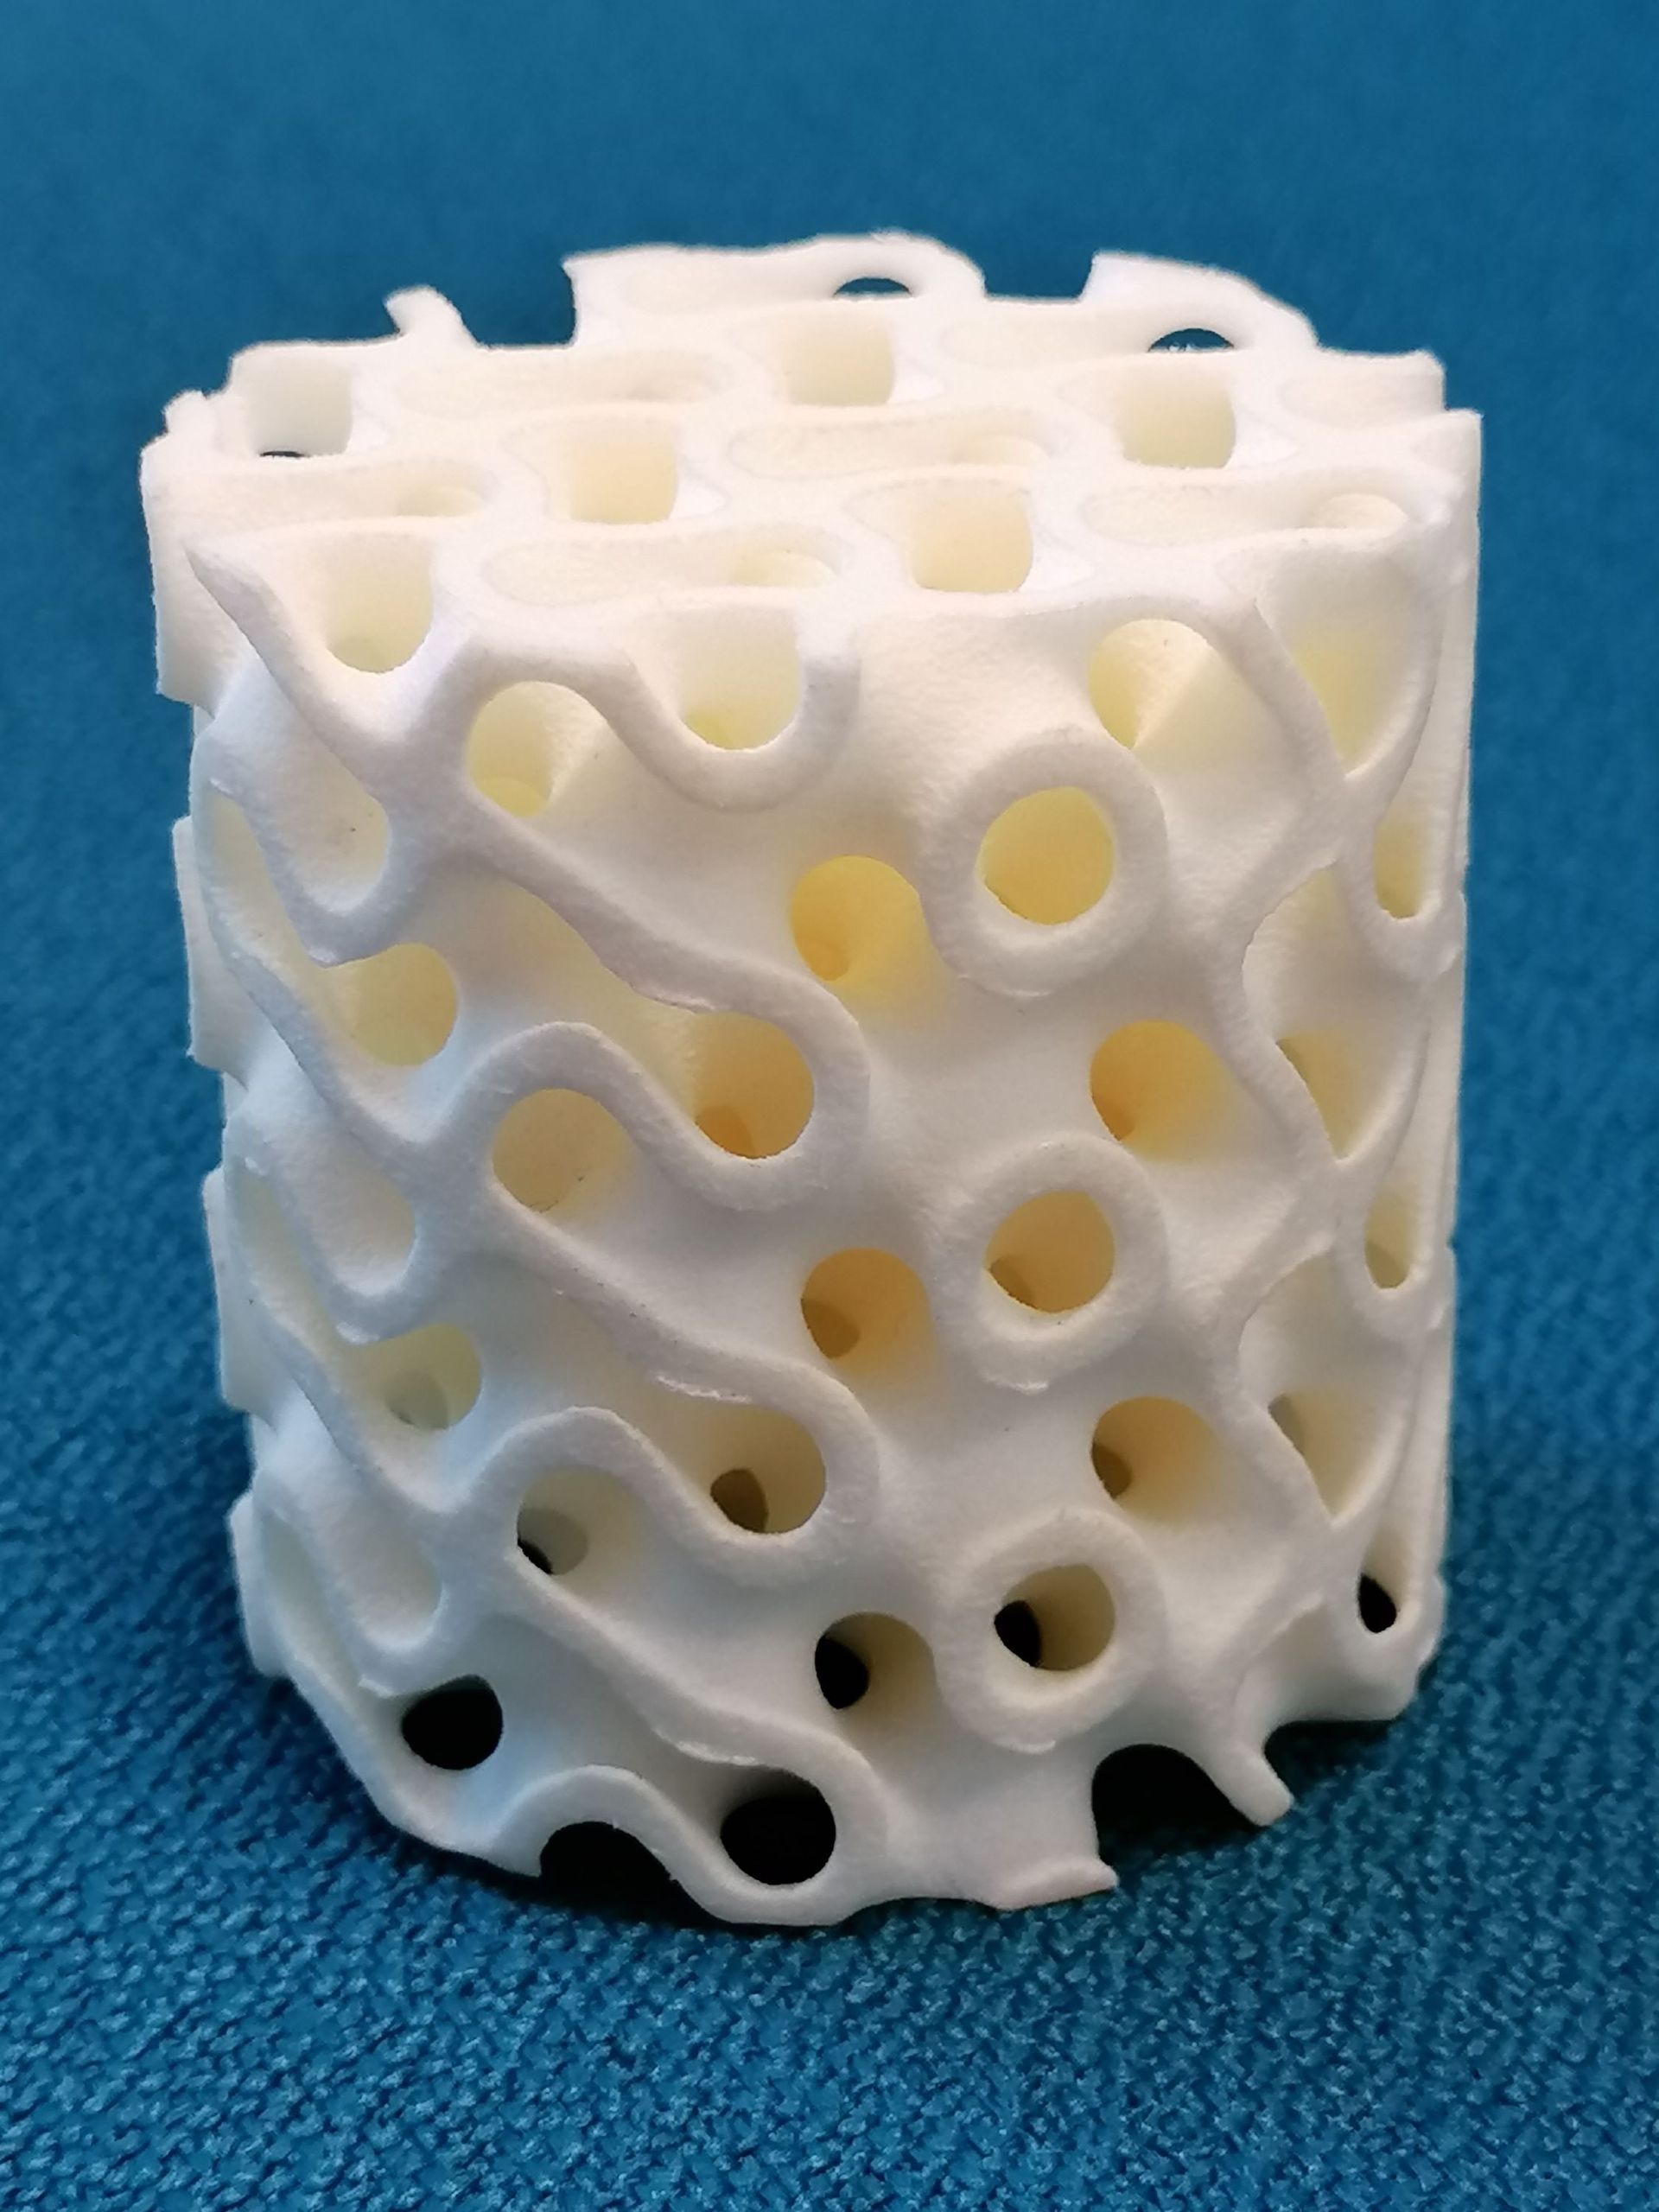 Exemple didactique d'implant osseux imprimé en résine, de structure identique aux implants réels. 